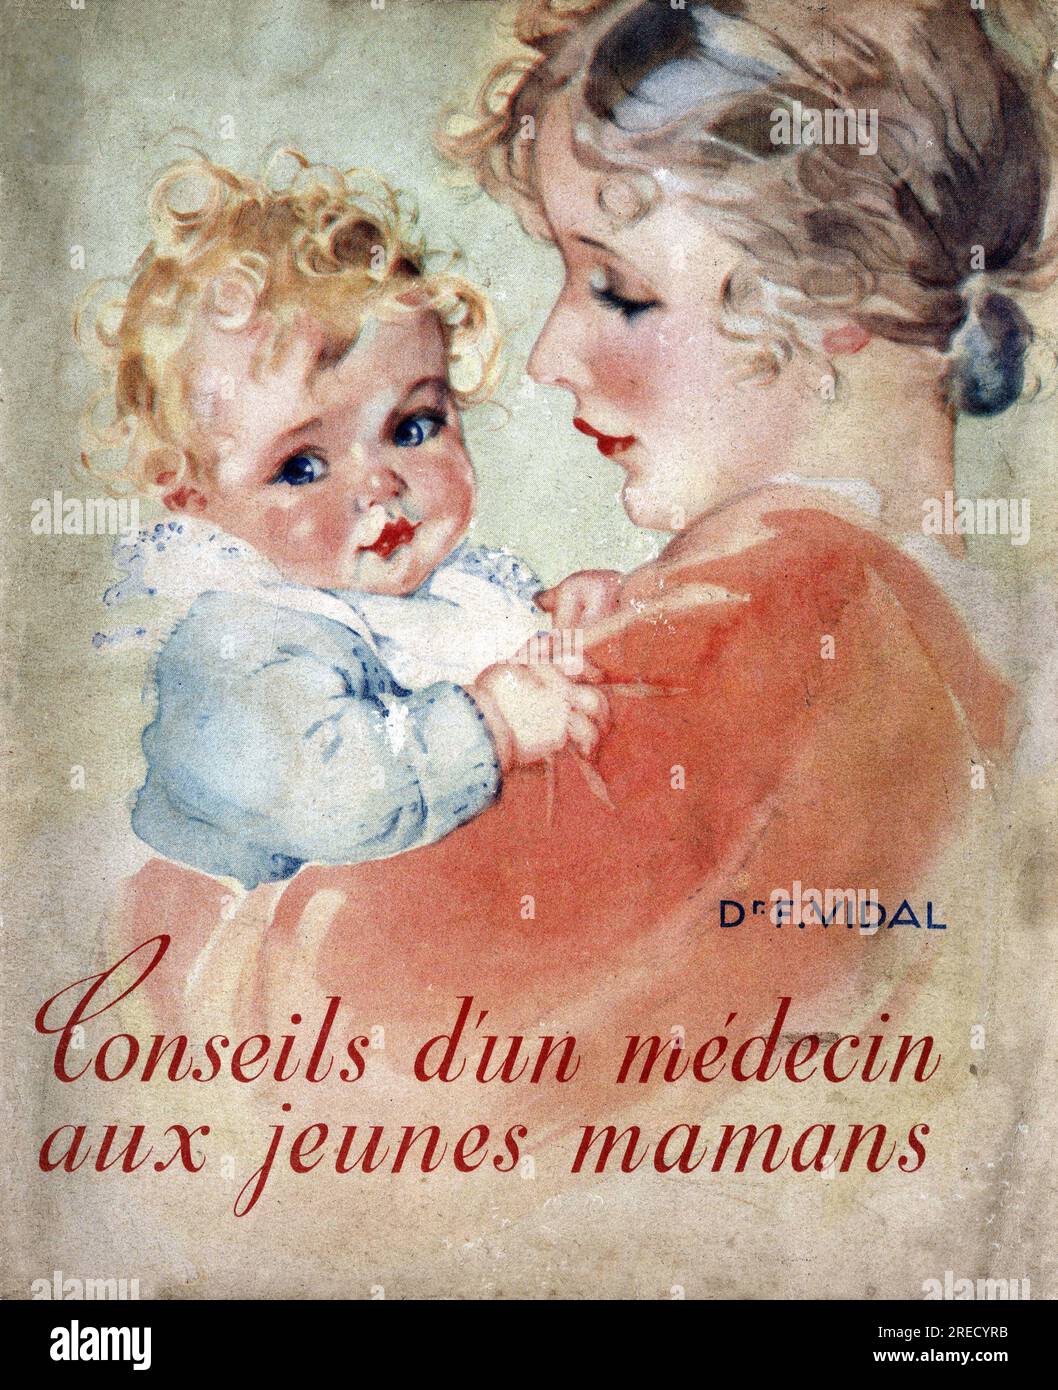 Pédiatrie. In 'conseils d'un médecin aux jeunes mamans', F. Vidal, 1940. Banque D'Images